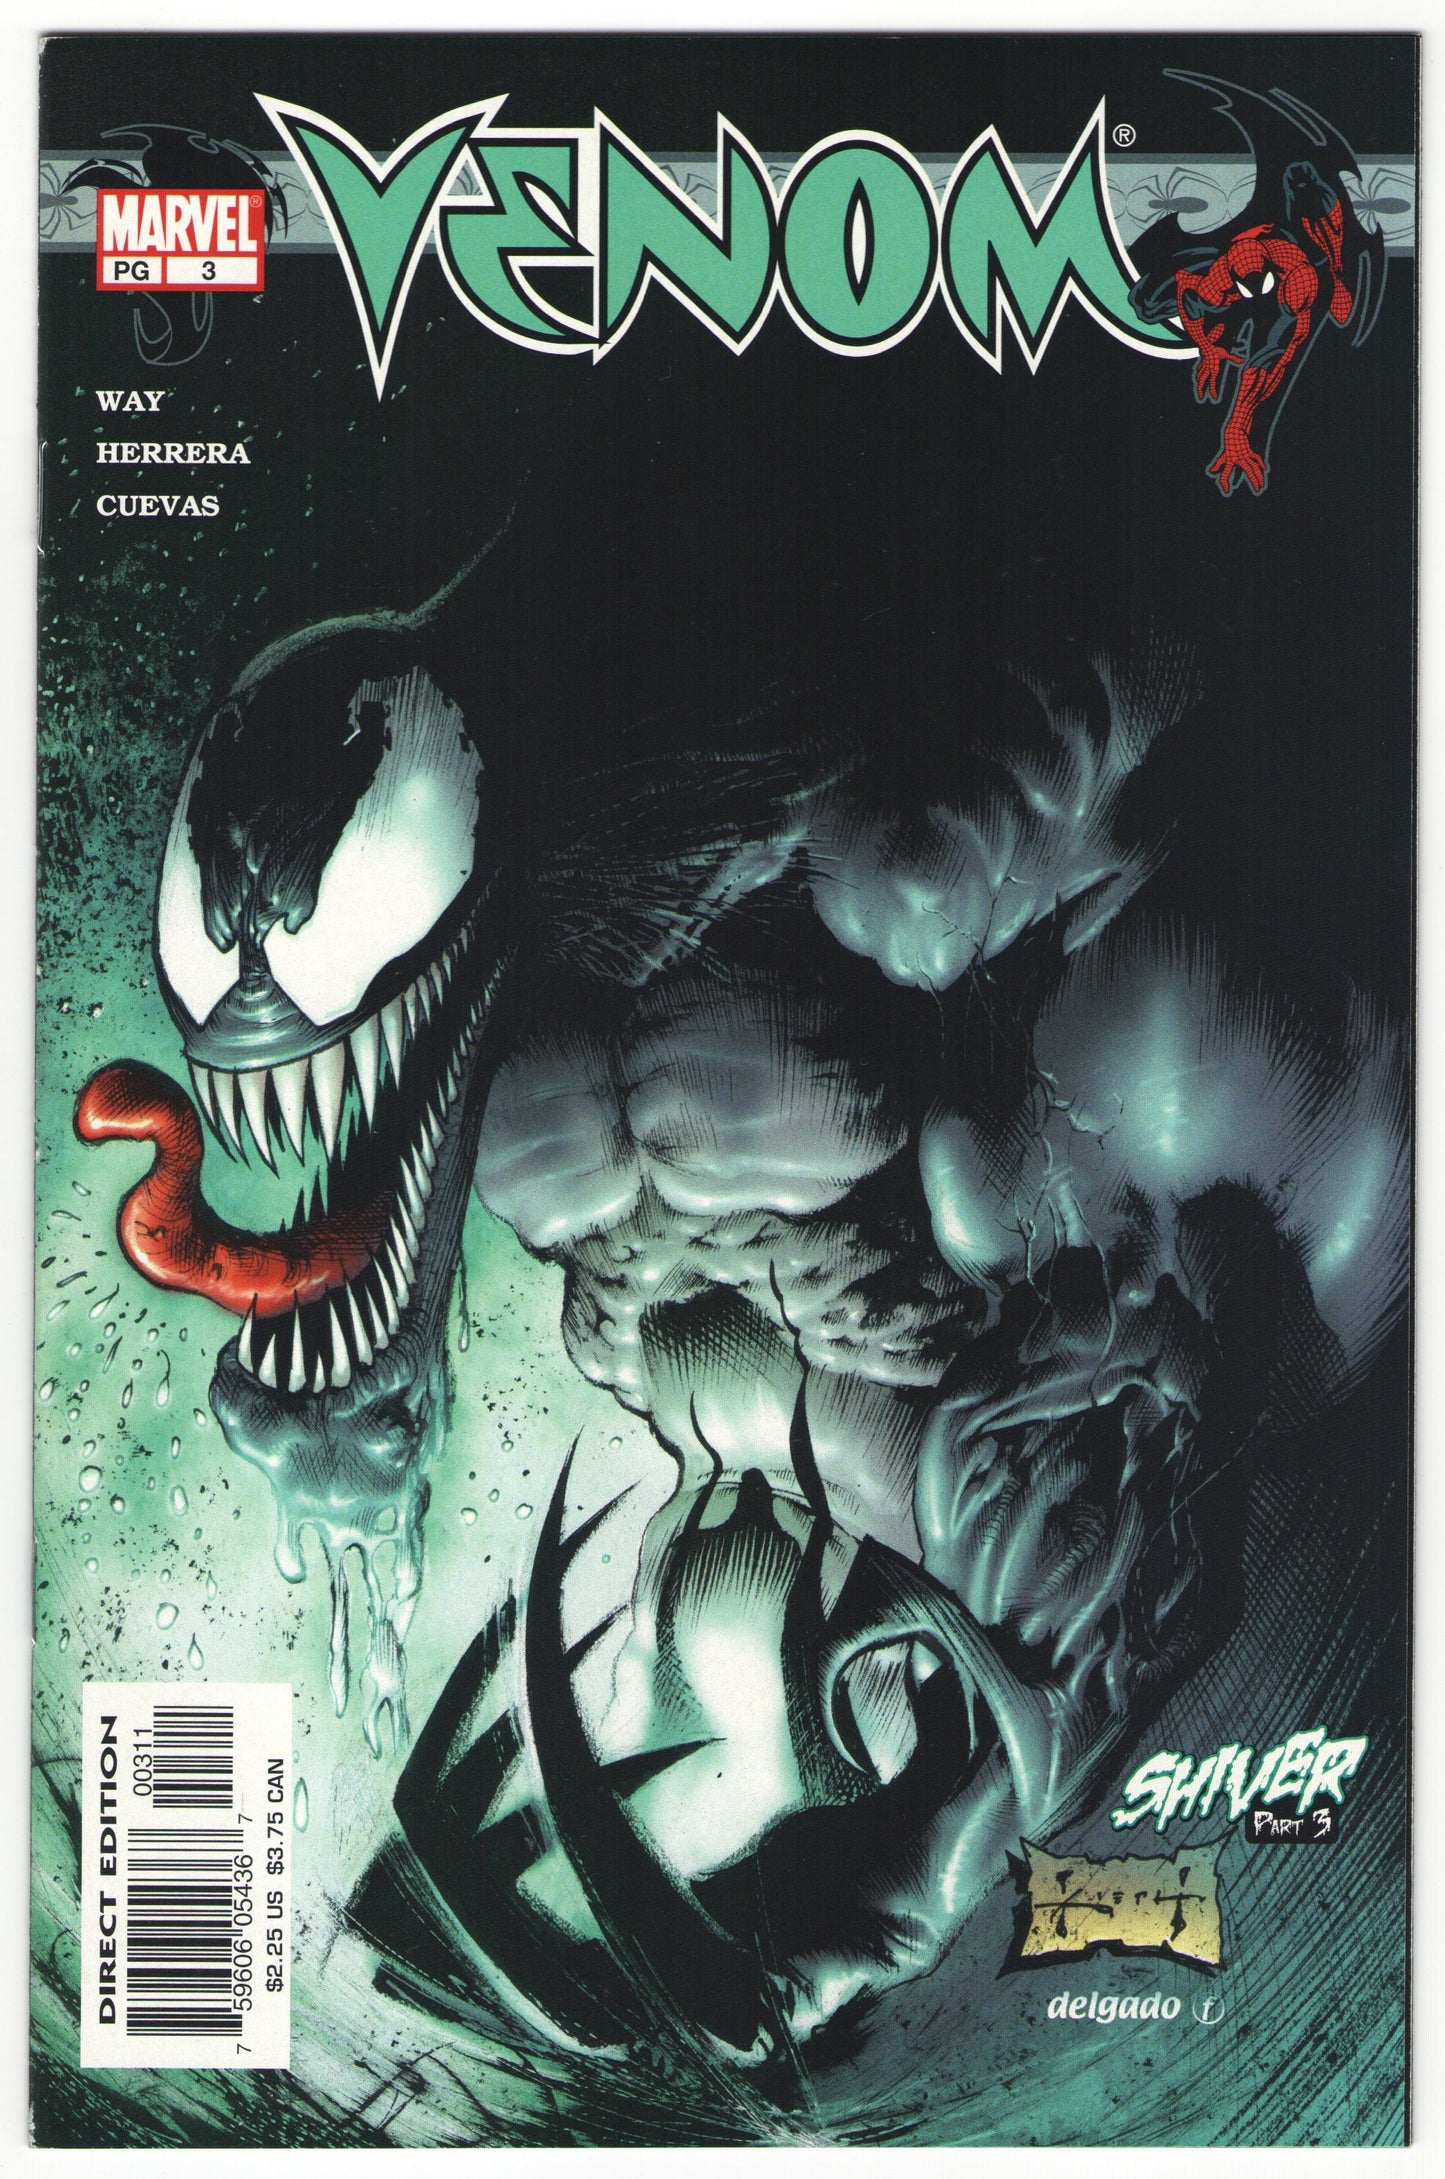 Venom (2003) "Shiver" Story Arc, Issues #1-5